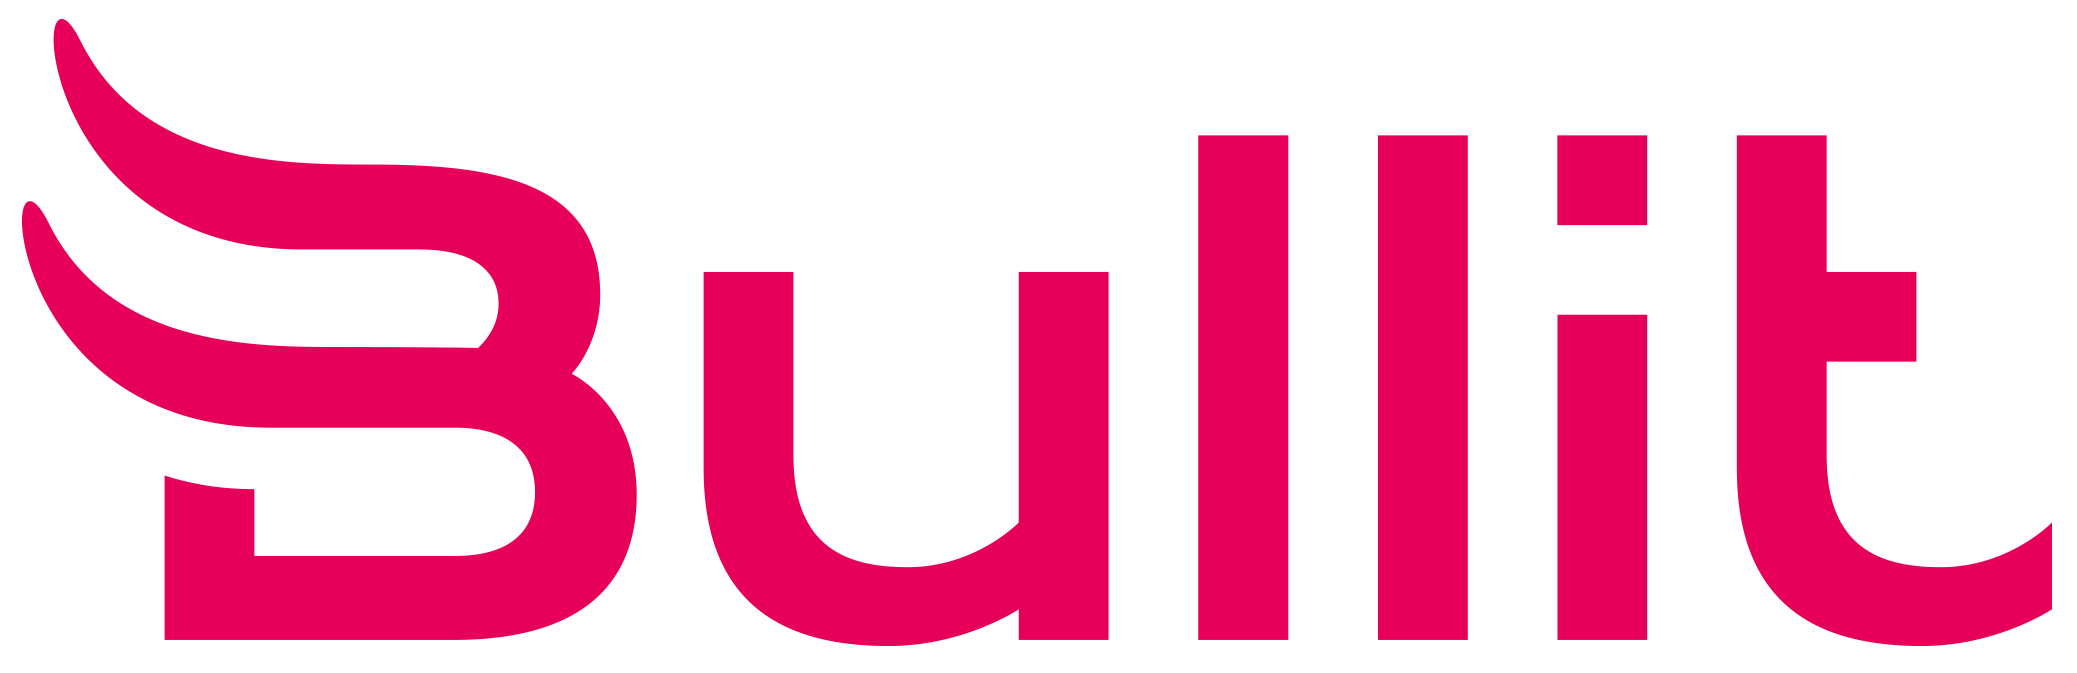 logo van Bullit Digital